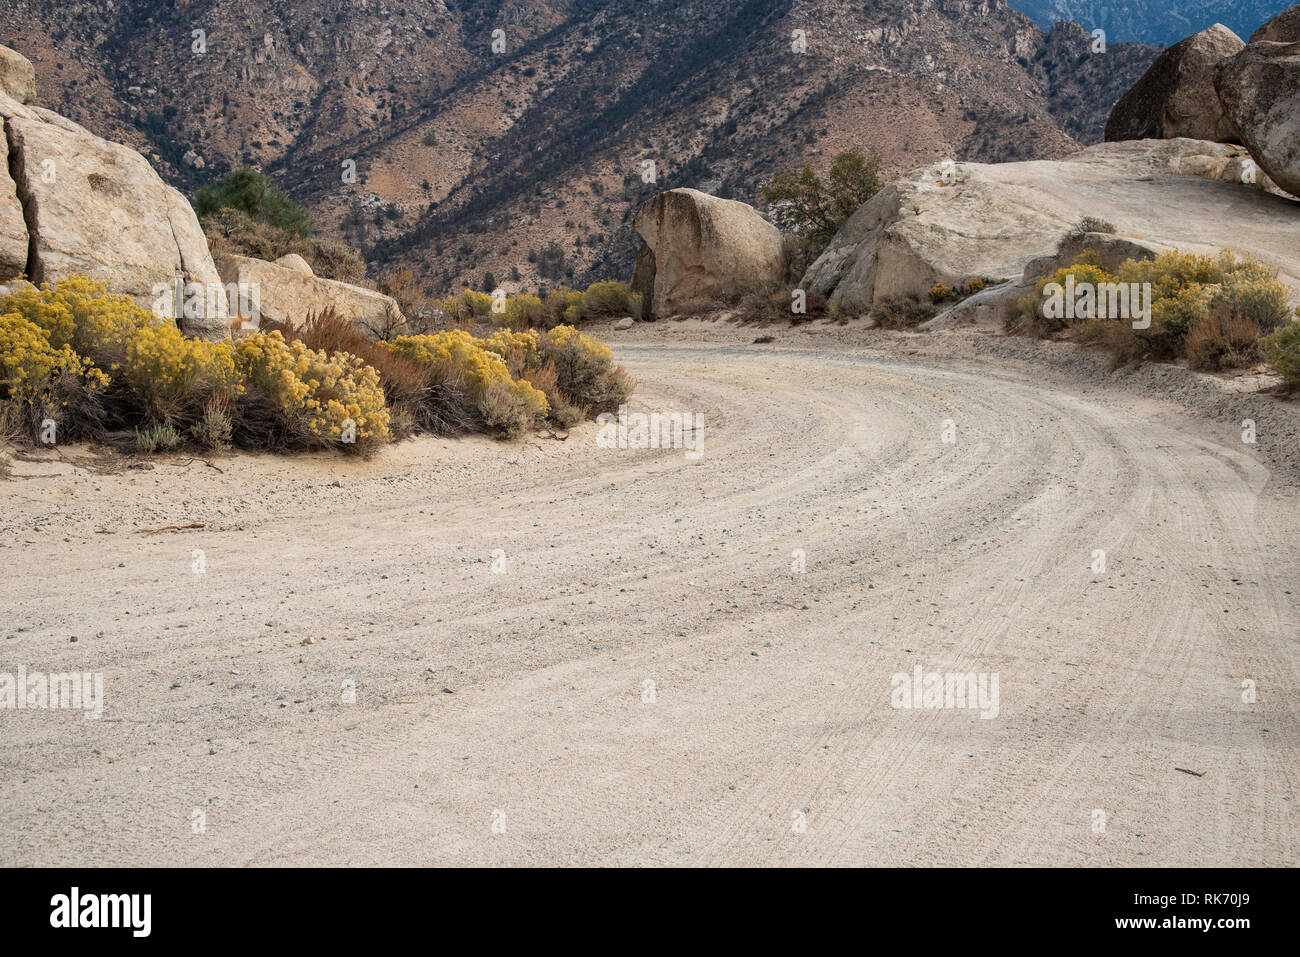 Primo piano della montagna su strada sterrata la curvatura intorno a rocce con boccole di colore giallo su ciascun lato della strada. Foto Stock